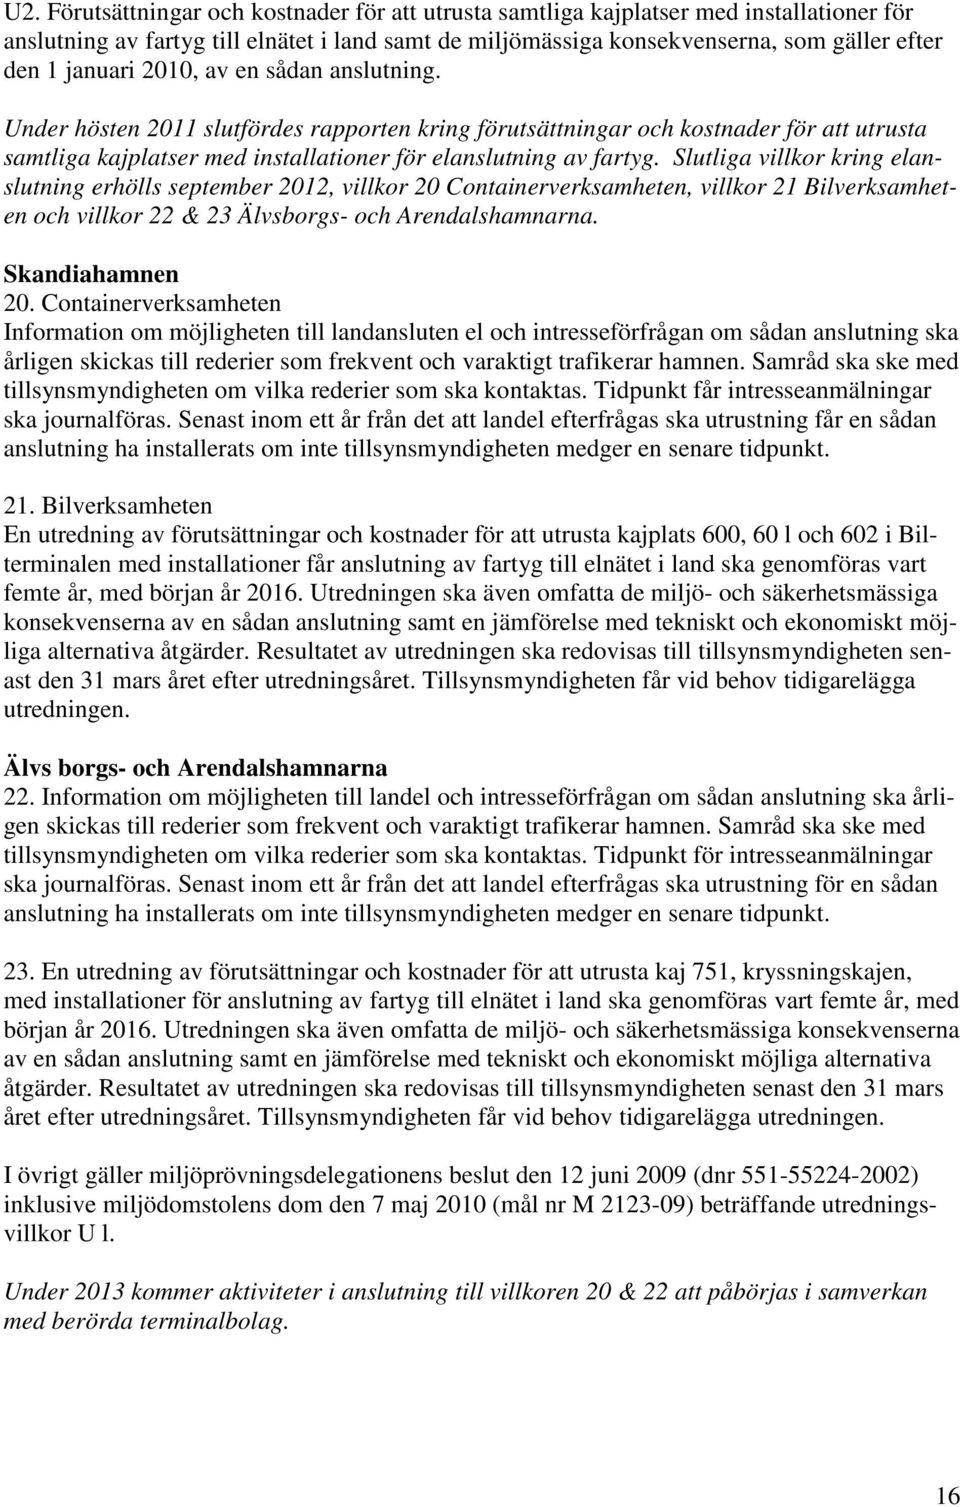 Slutliga villkor kring elanslutning erhölls september 2012, villkor 20 Containerverksamheten, villkor 21 Bilverksamheten och villkor 22 & 23 Älvsborgs- och Arendalshamnarna. Skandiahamnen 20.